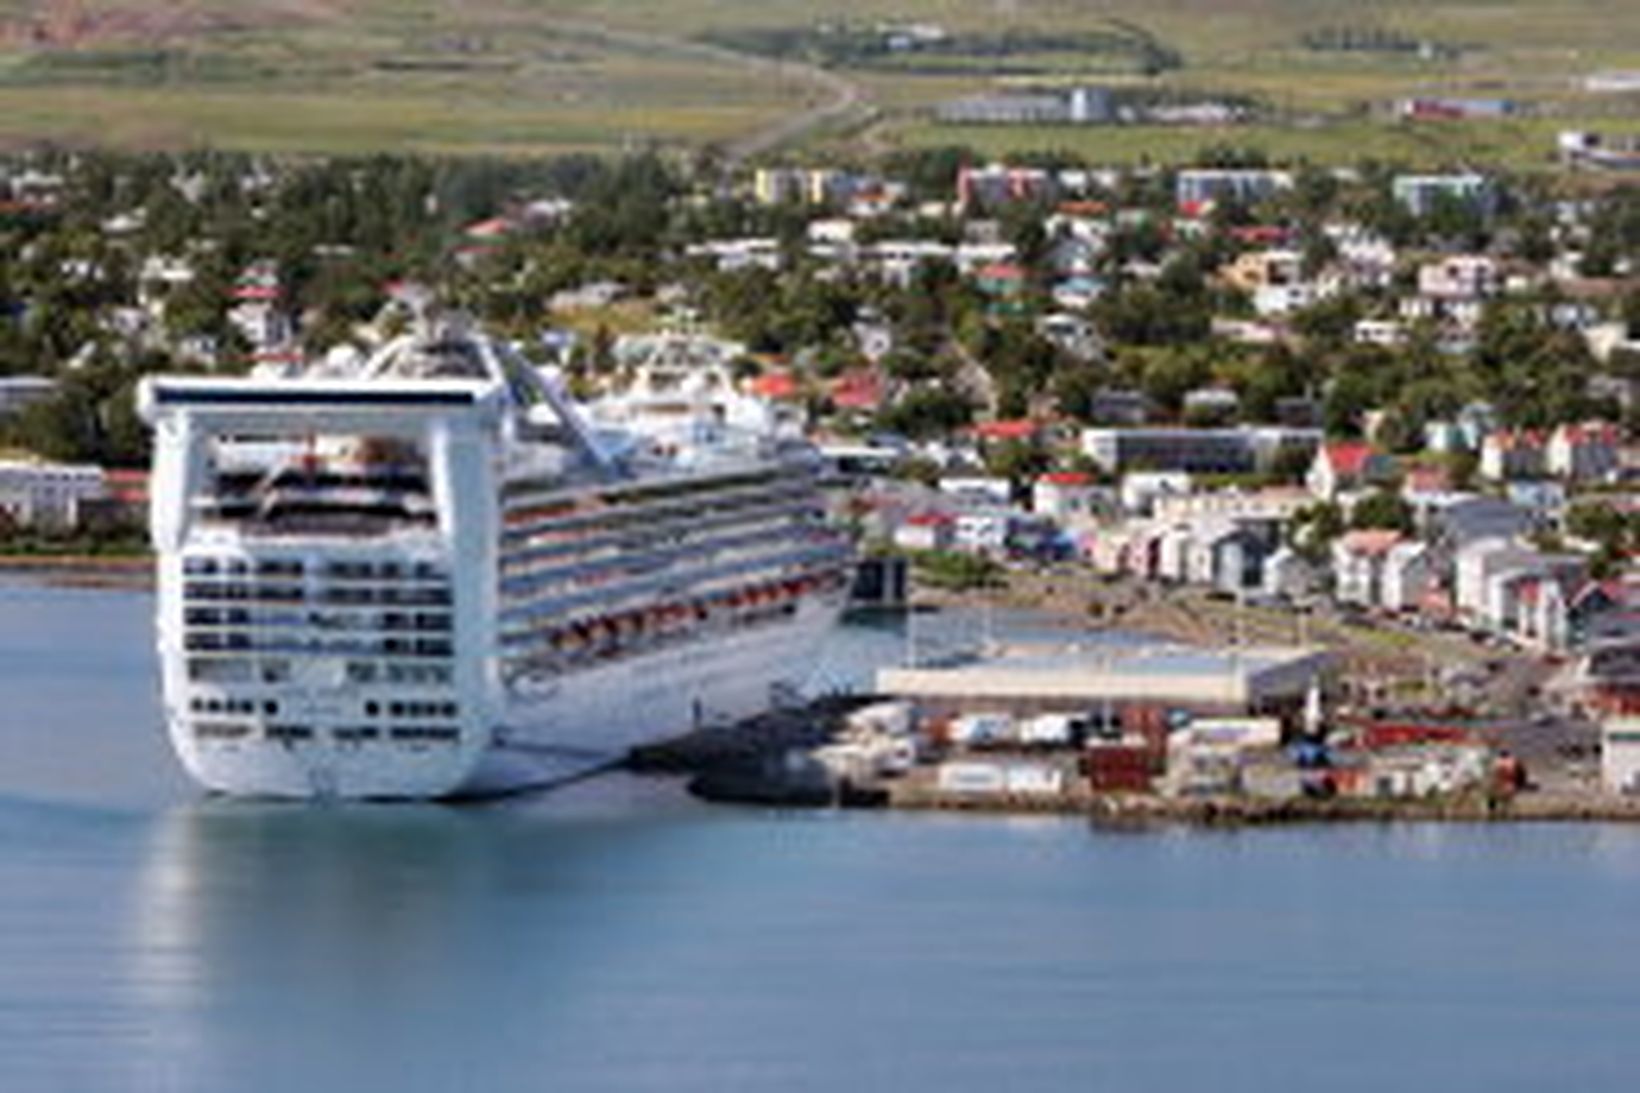 Grand Princess við höfn á Akureyri.